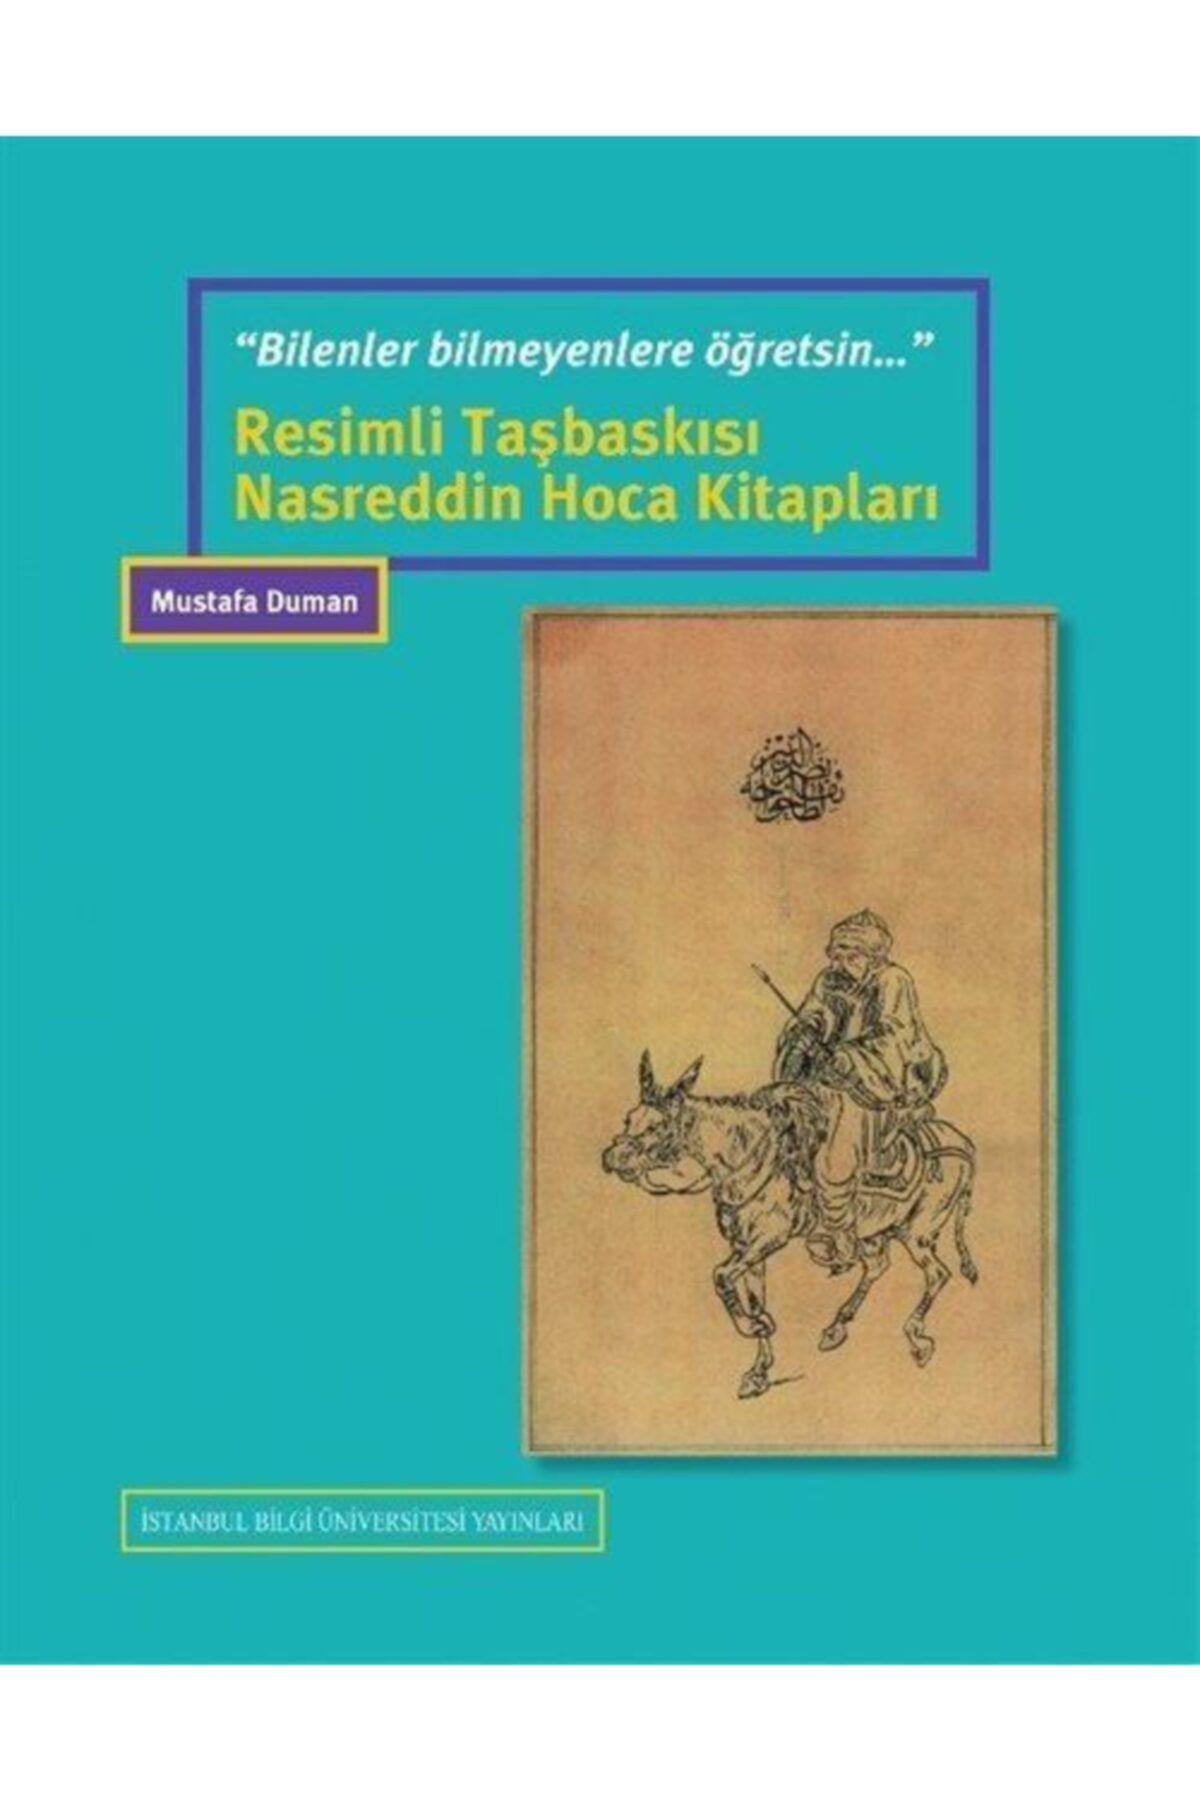 İstanbul Bilgi Üniversitesi Yayınları Bsrl “bilenler Bilmeyenlere Öğretsin..”resimli Taşbaskısı Nasreddin Hoca Kitapları - Mustafa Duman